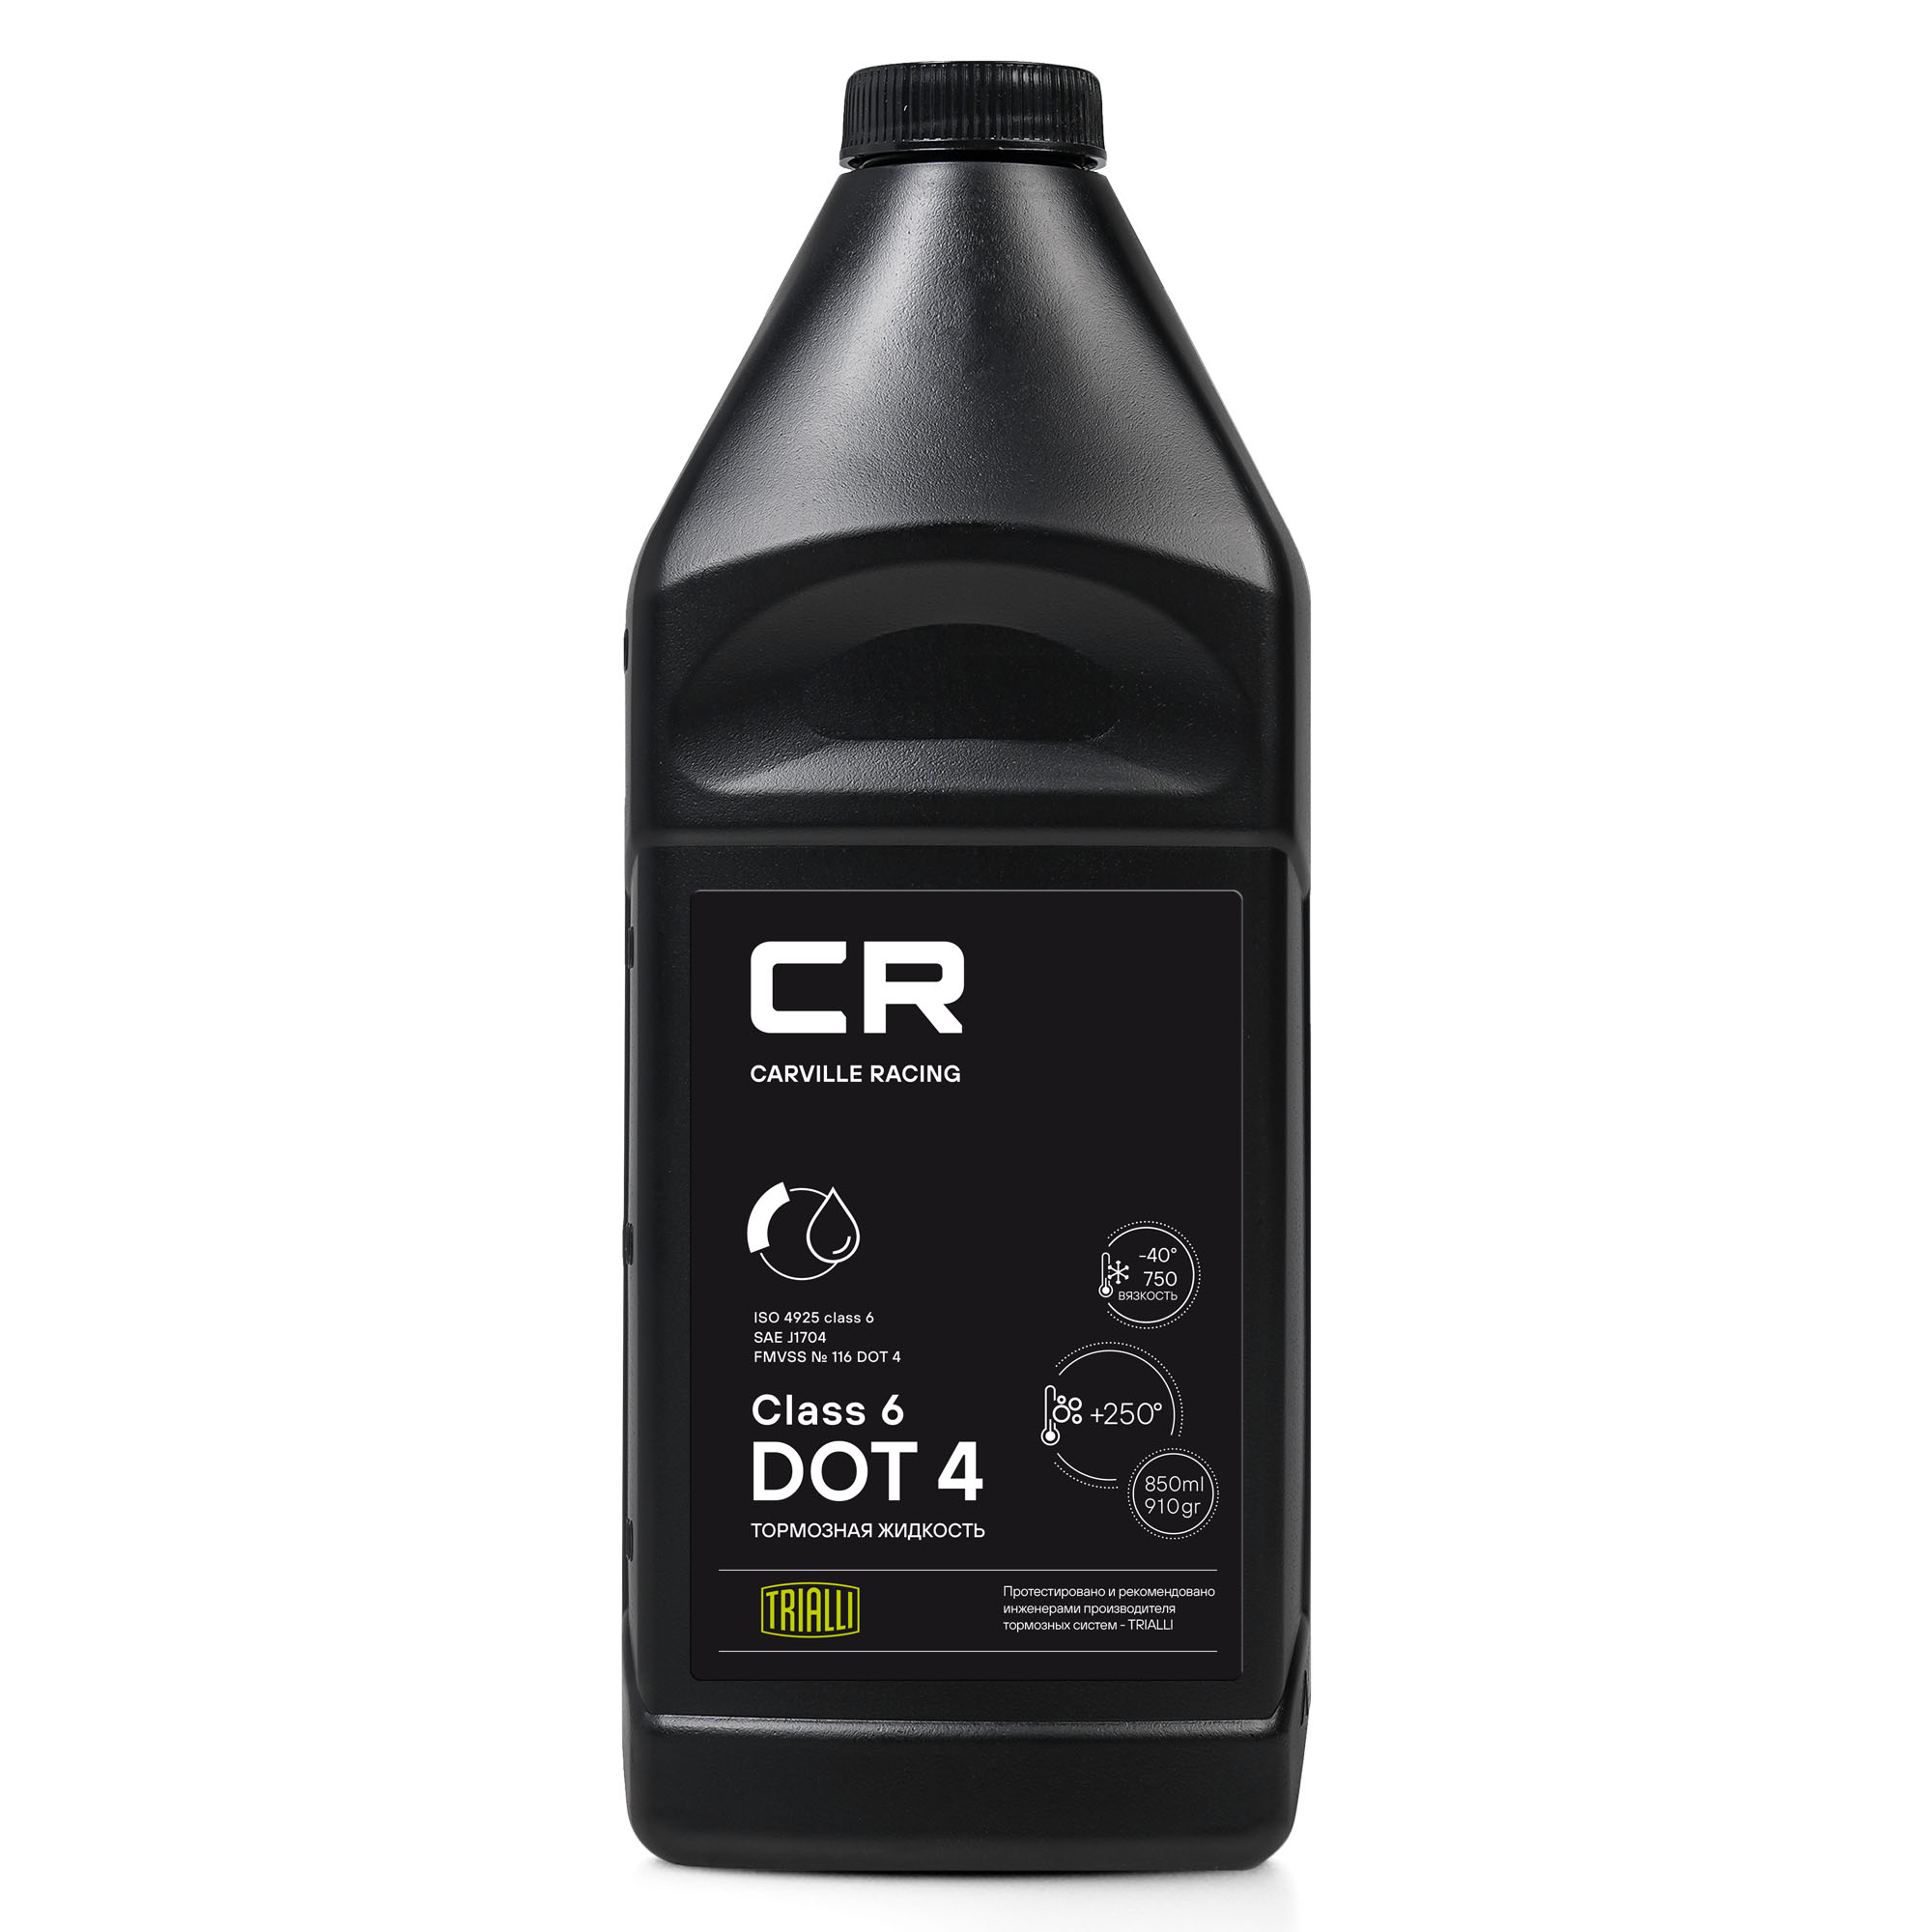 Жидкость тормозная CR DOT 4 Class 6, t>250°C, вязкость<700, 850мл/910гр - Carville Racing L6275009